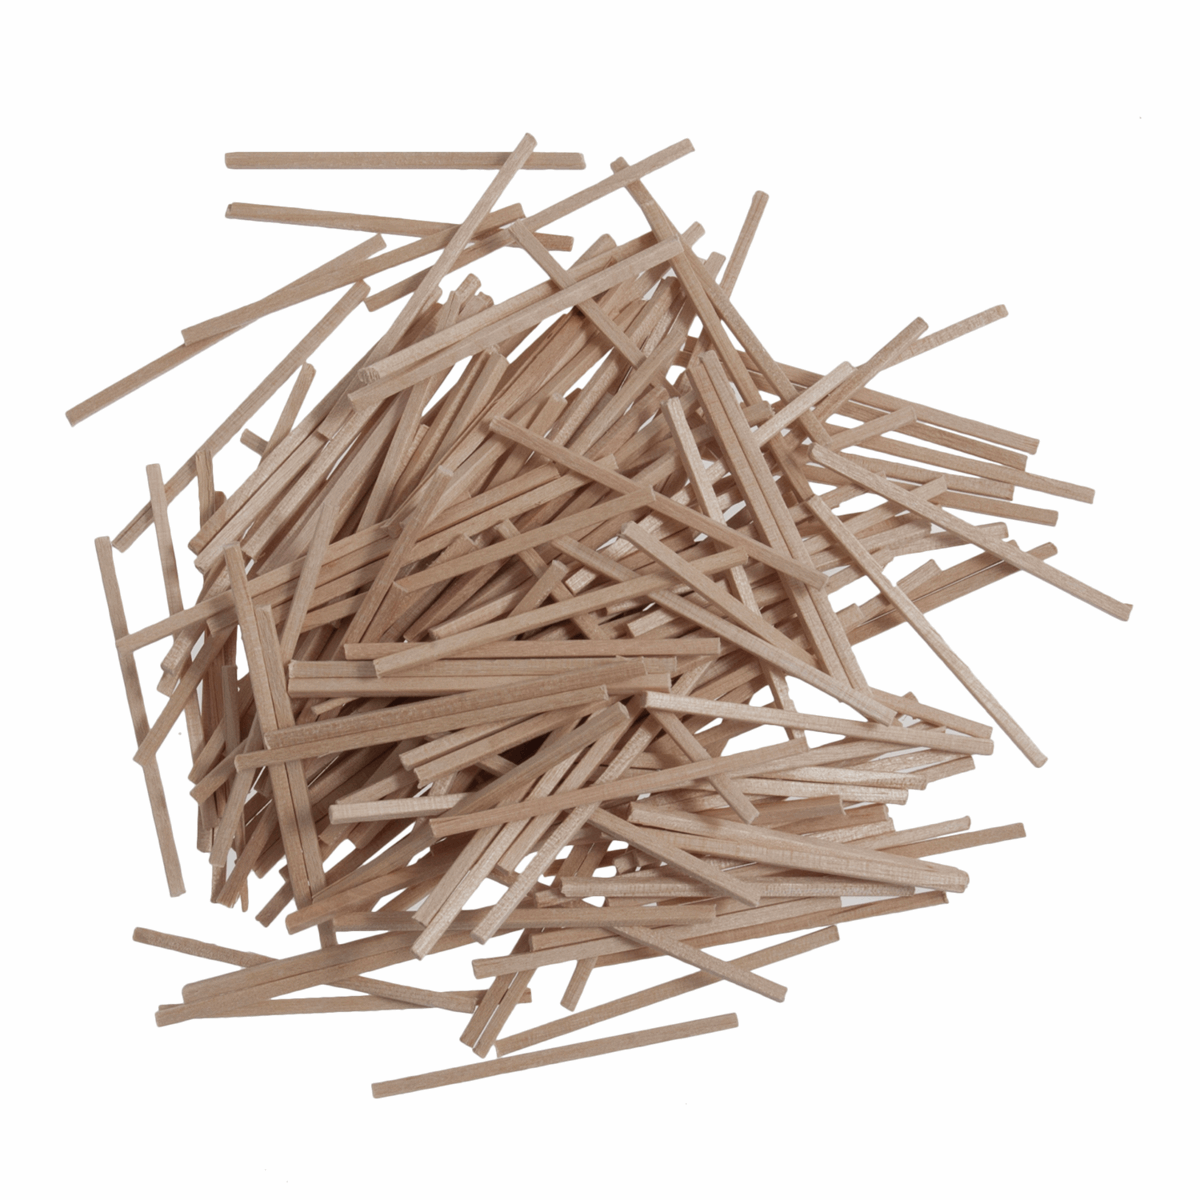 Trimits Natural Wooden Craft Match Sticks - 500pk